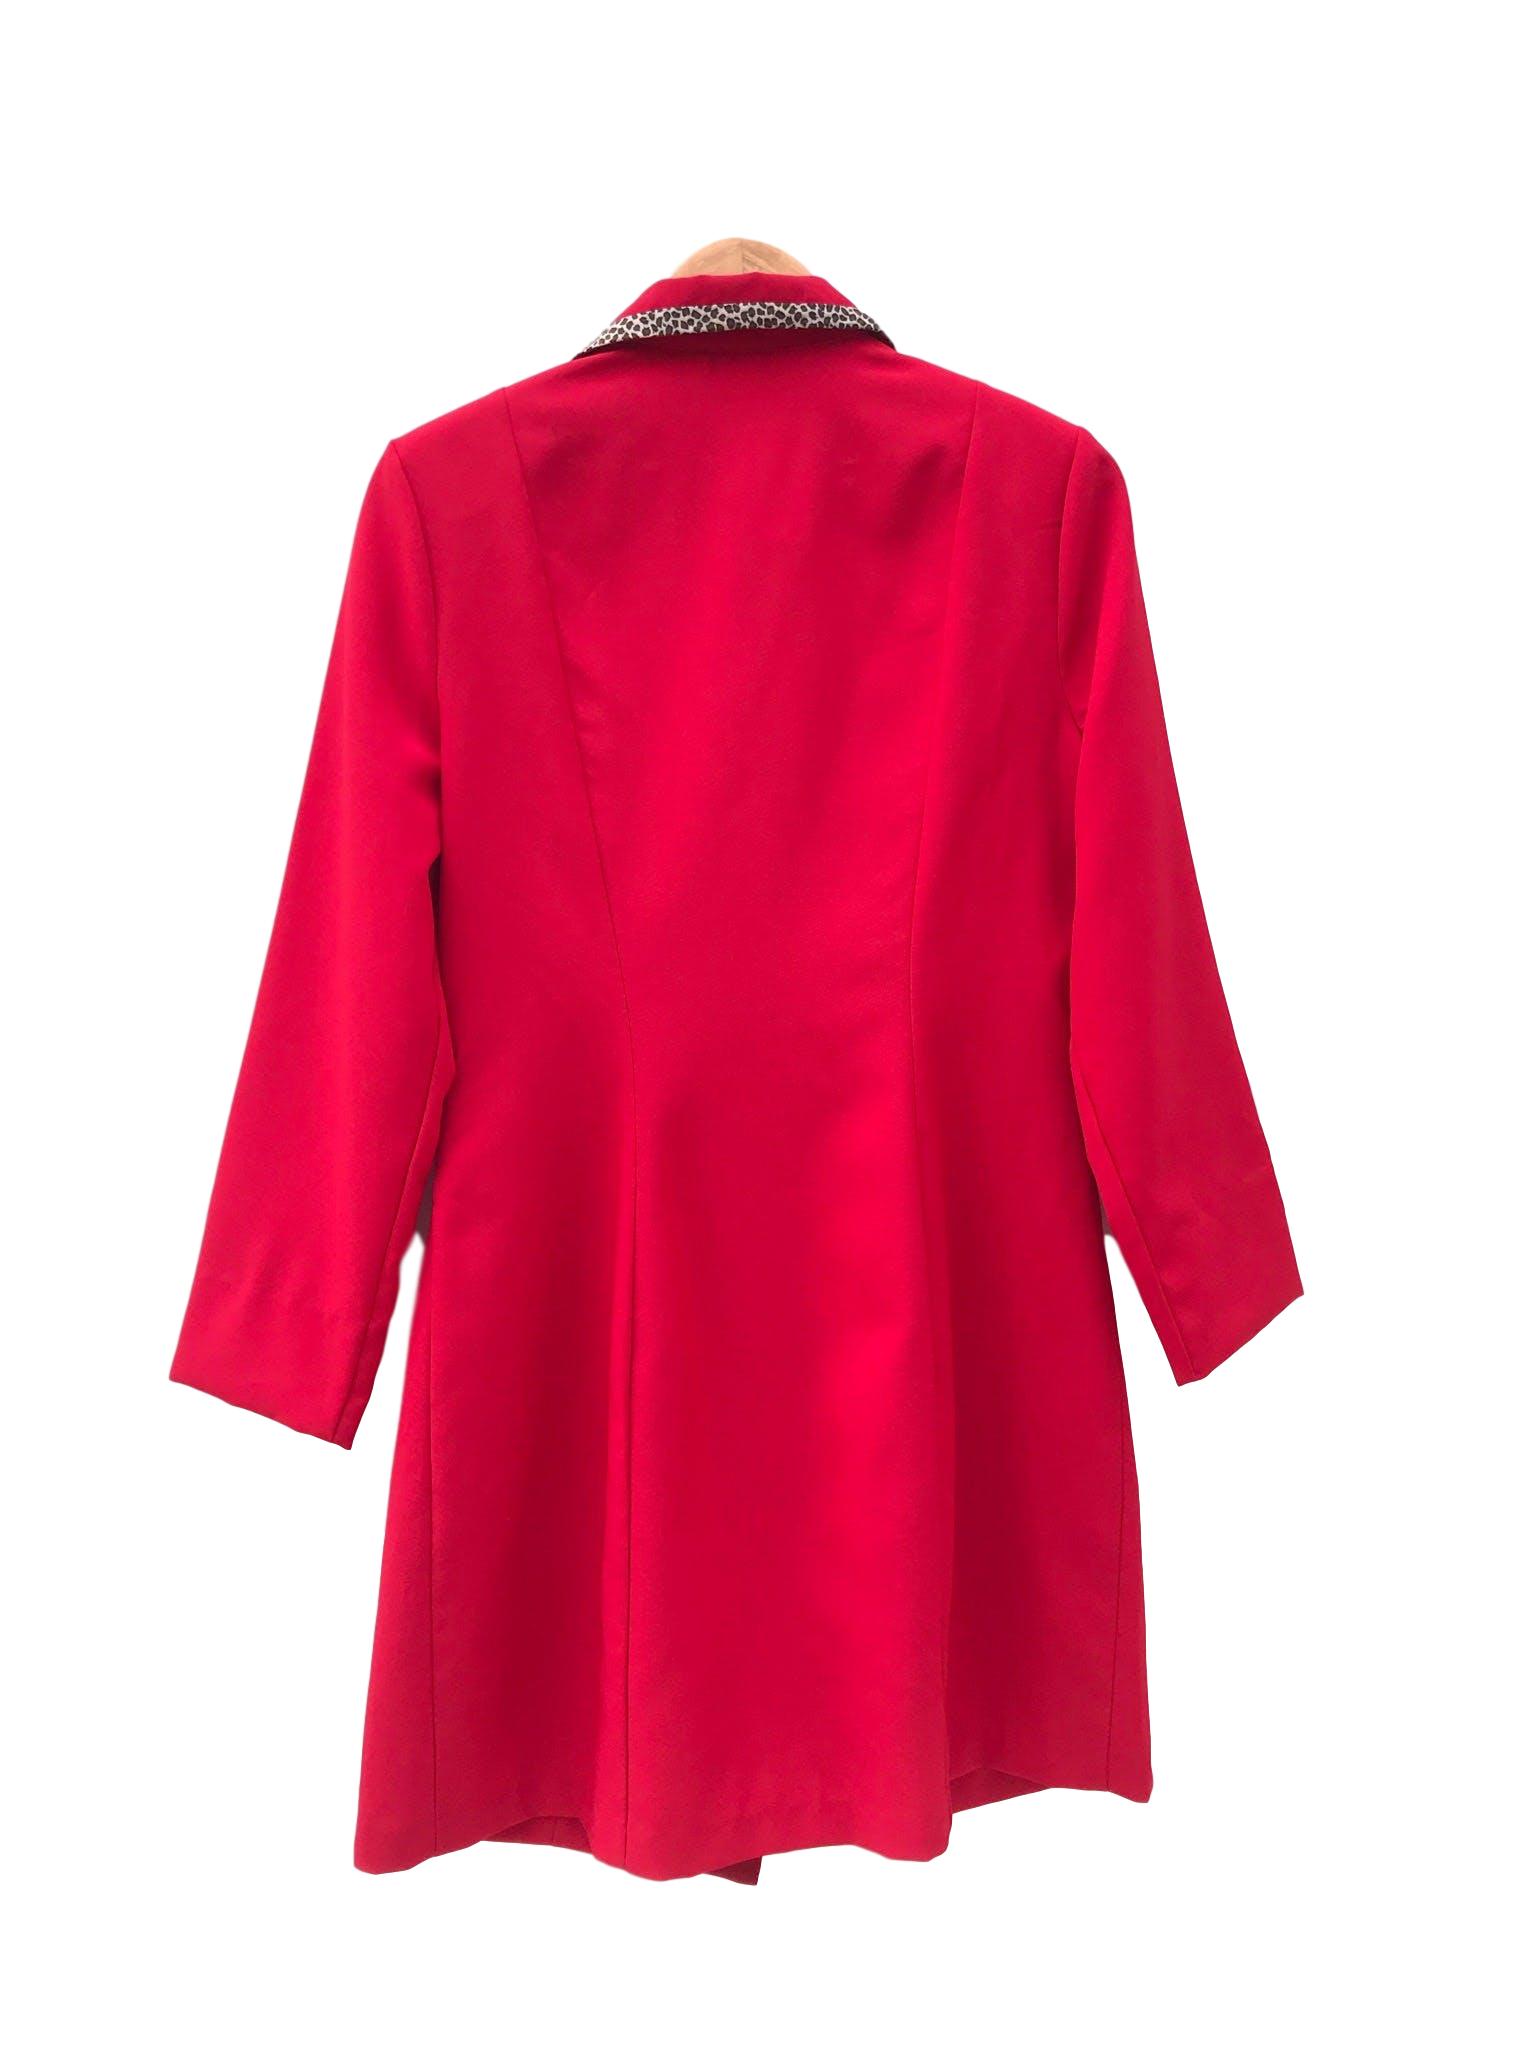 Abrigo vintage de tela tipo sastre roja con ribetes animal print en bolsillos y cuello. Largo 88cm